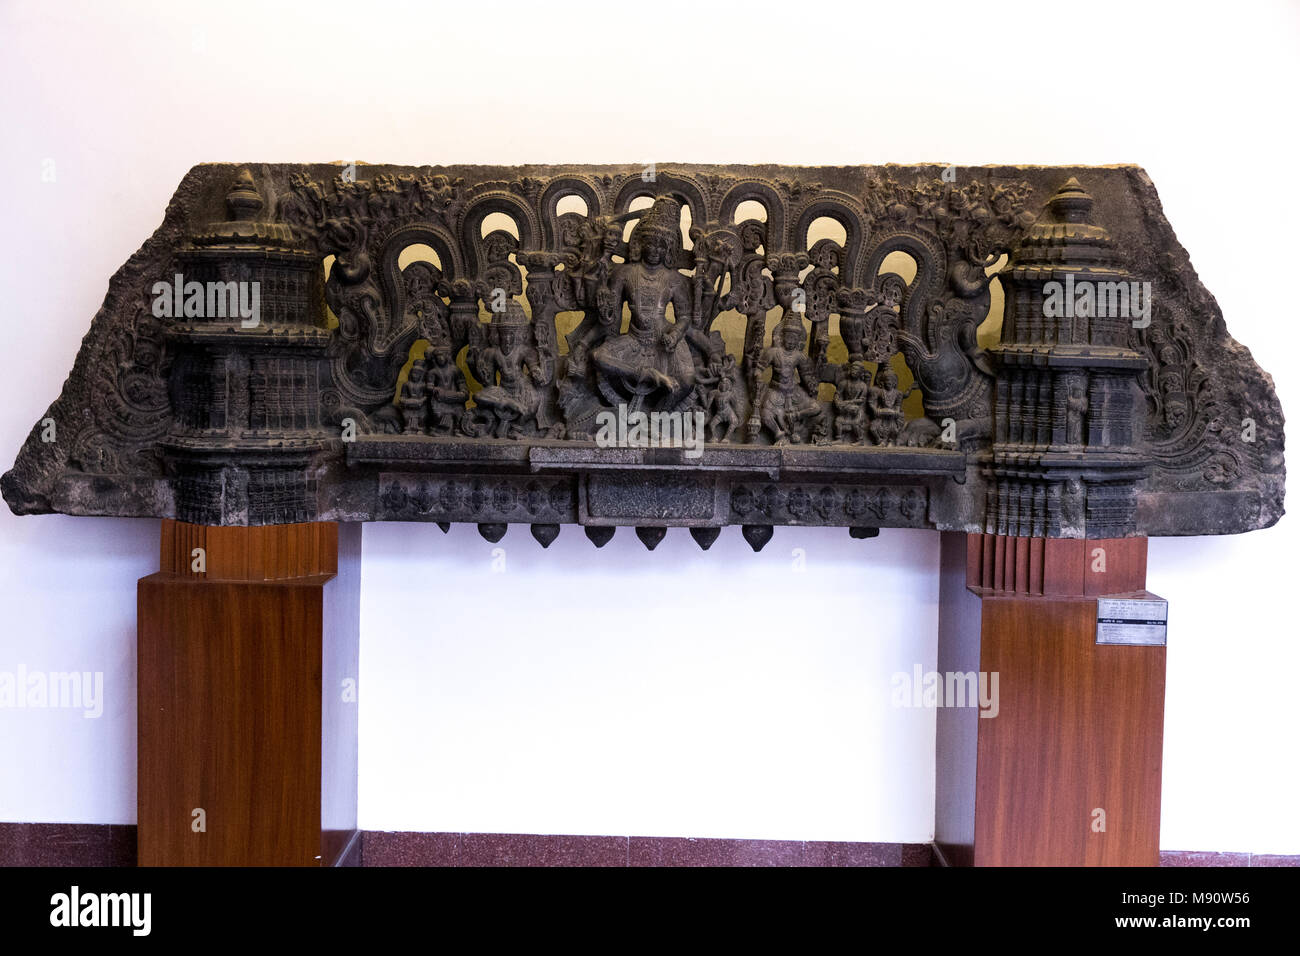 Musée national de l'Inde, Delhi. Linteau montrant trinity (Brahma, Vishnu et Shiva). Kakatiya, 12ème siècle A.D. Warangal, Andhra Pradesh. Pierre. Toute information Banque D'Images